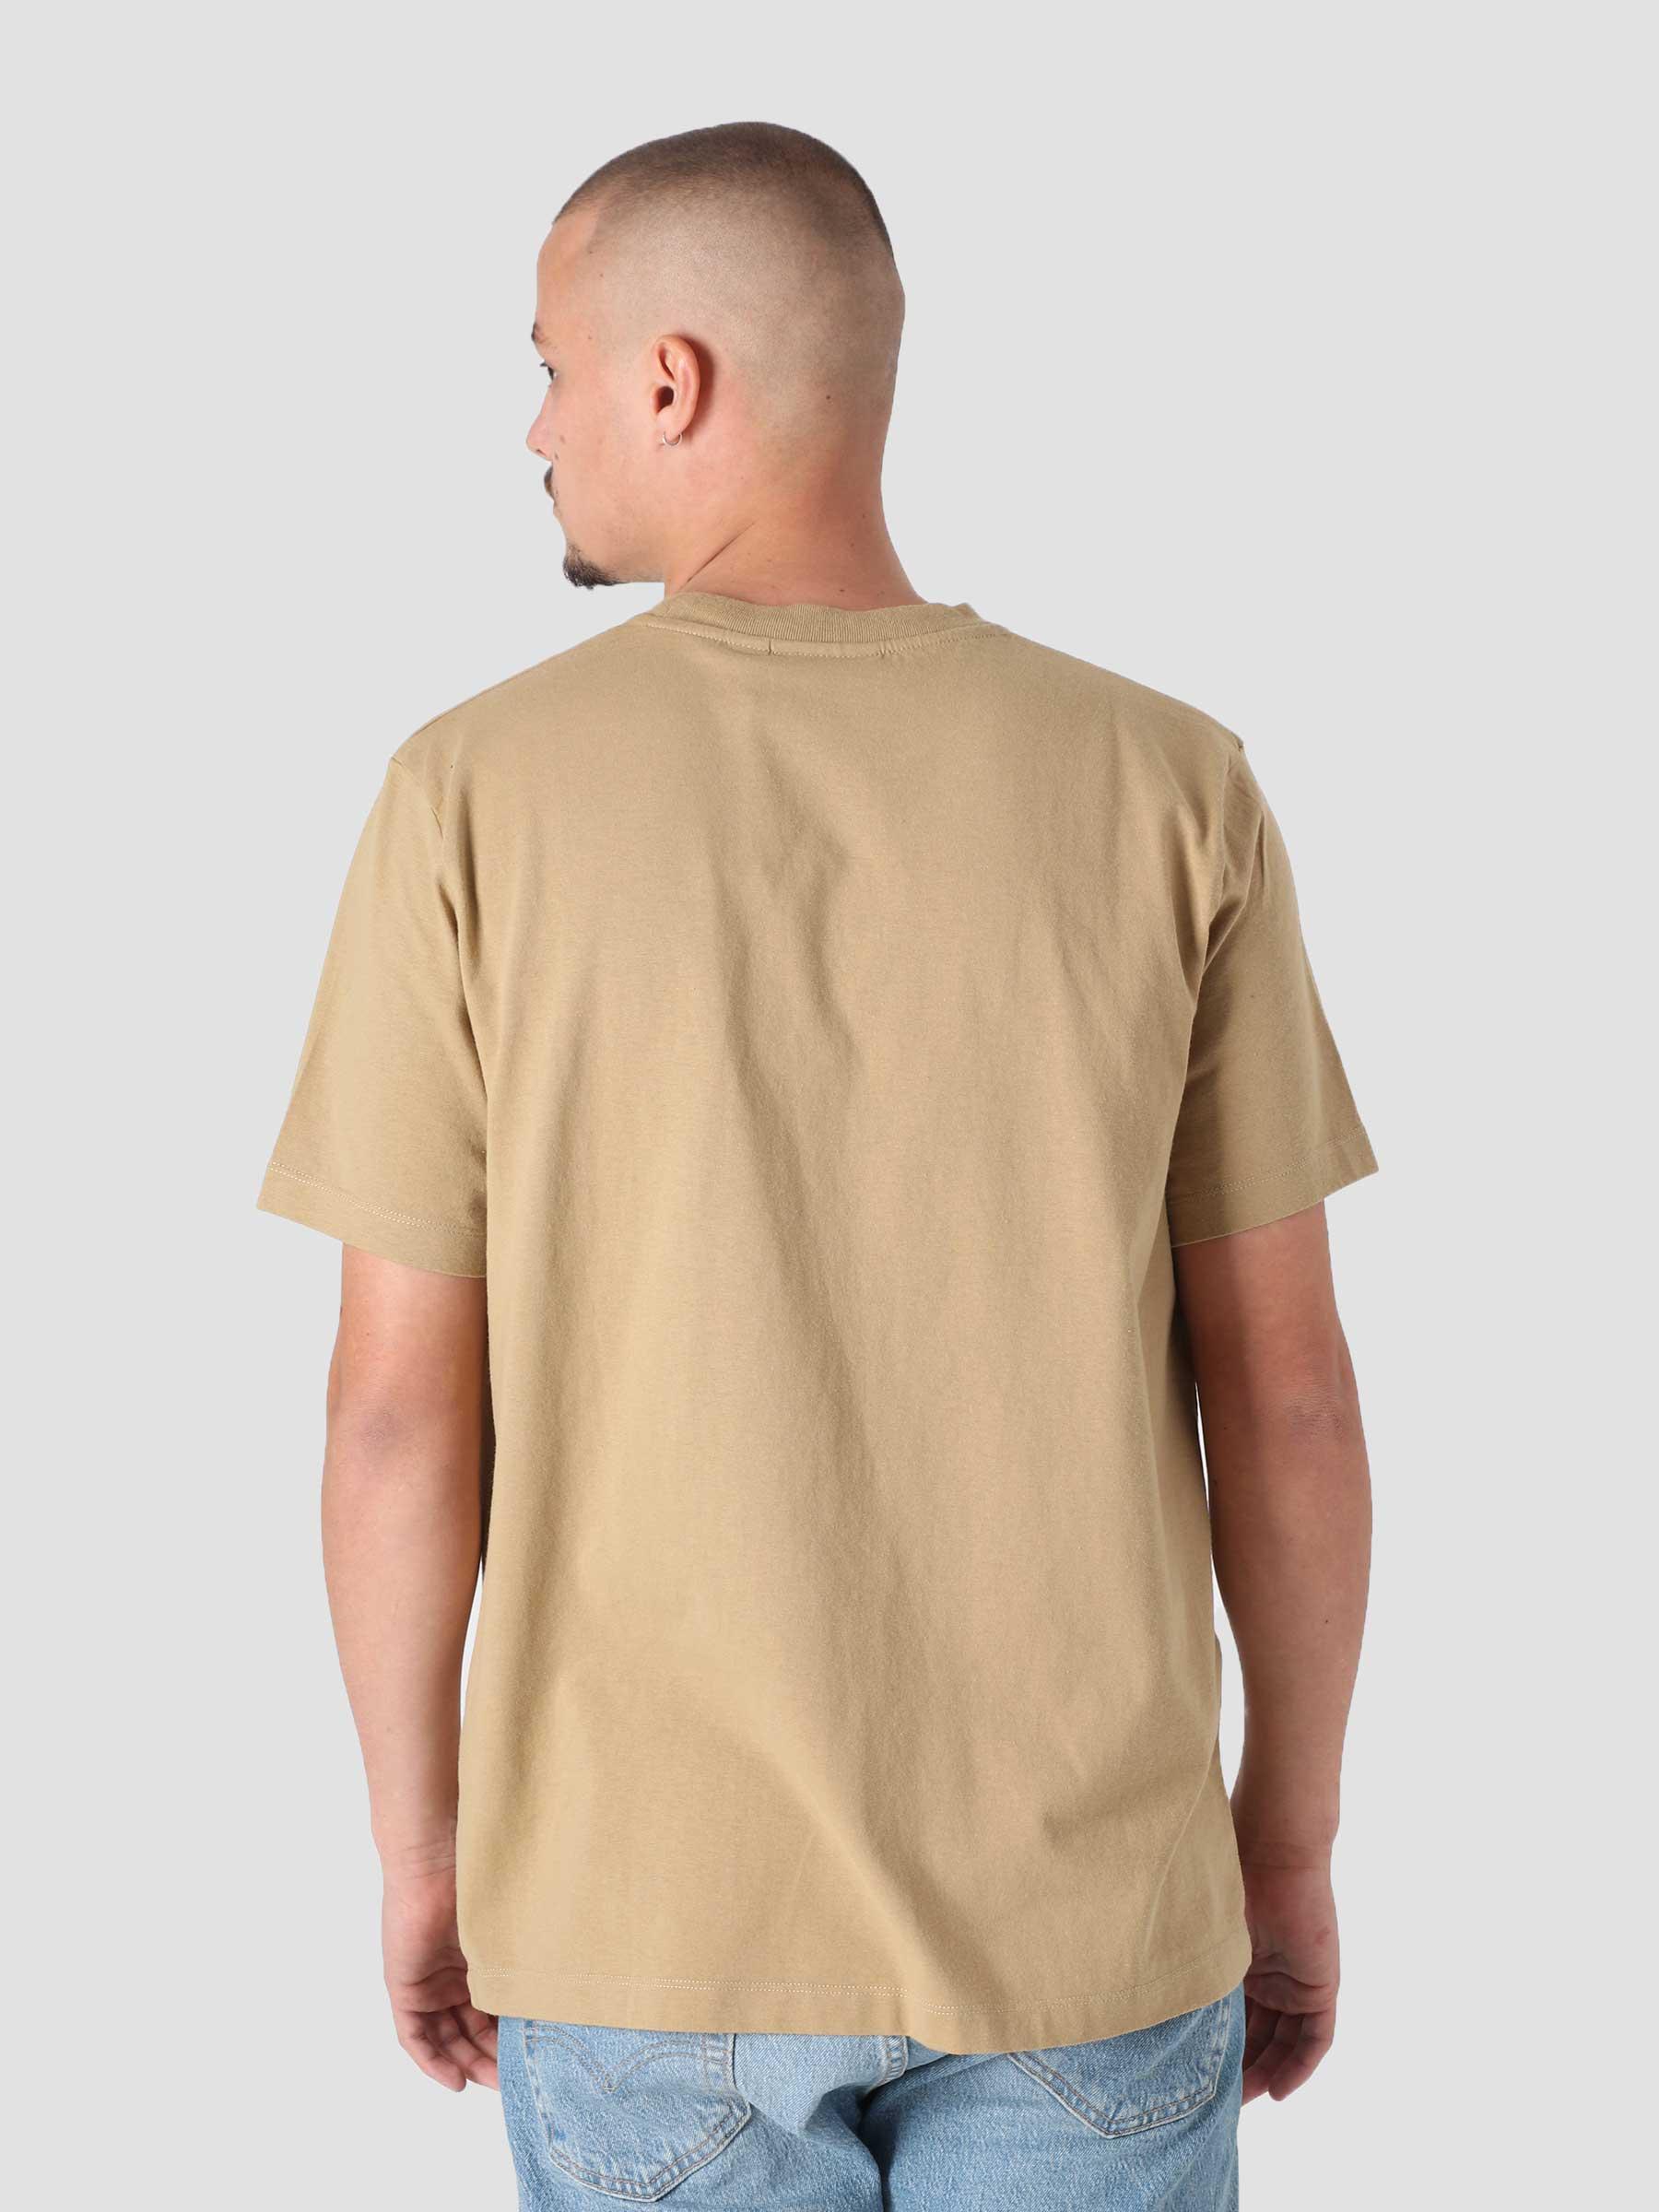 Bad Habits T-Shirt Camel 46301